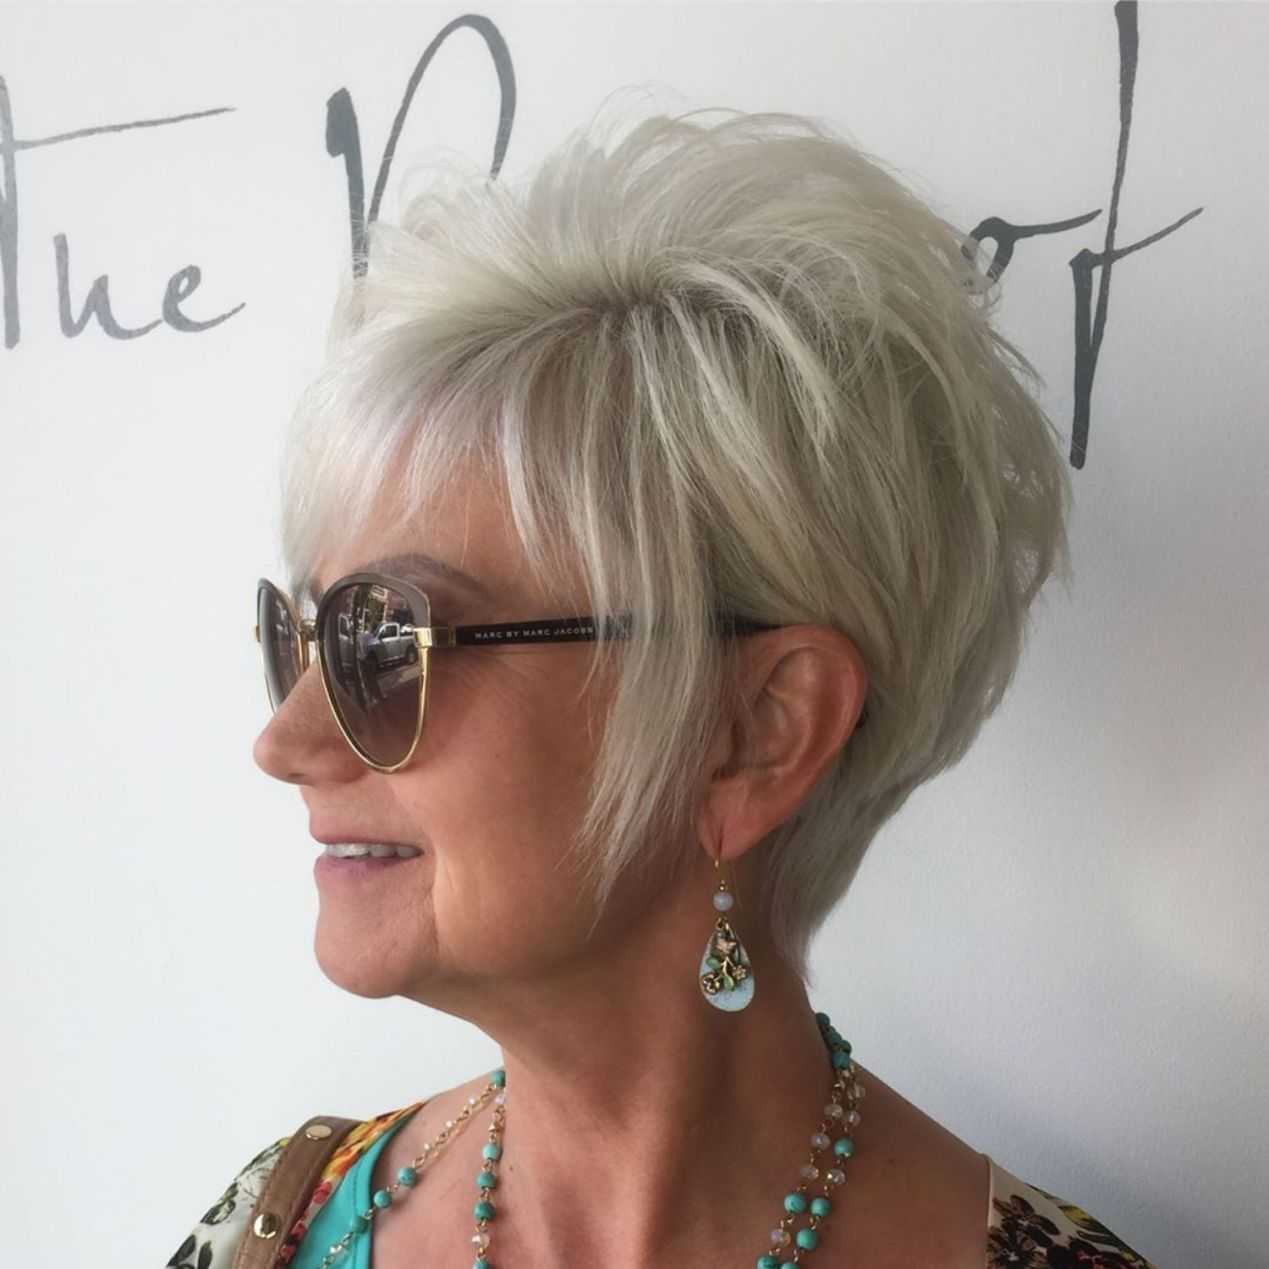 Стрижки на короткие волосы для женщин 50 лет - фото без укладки